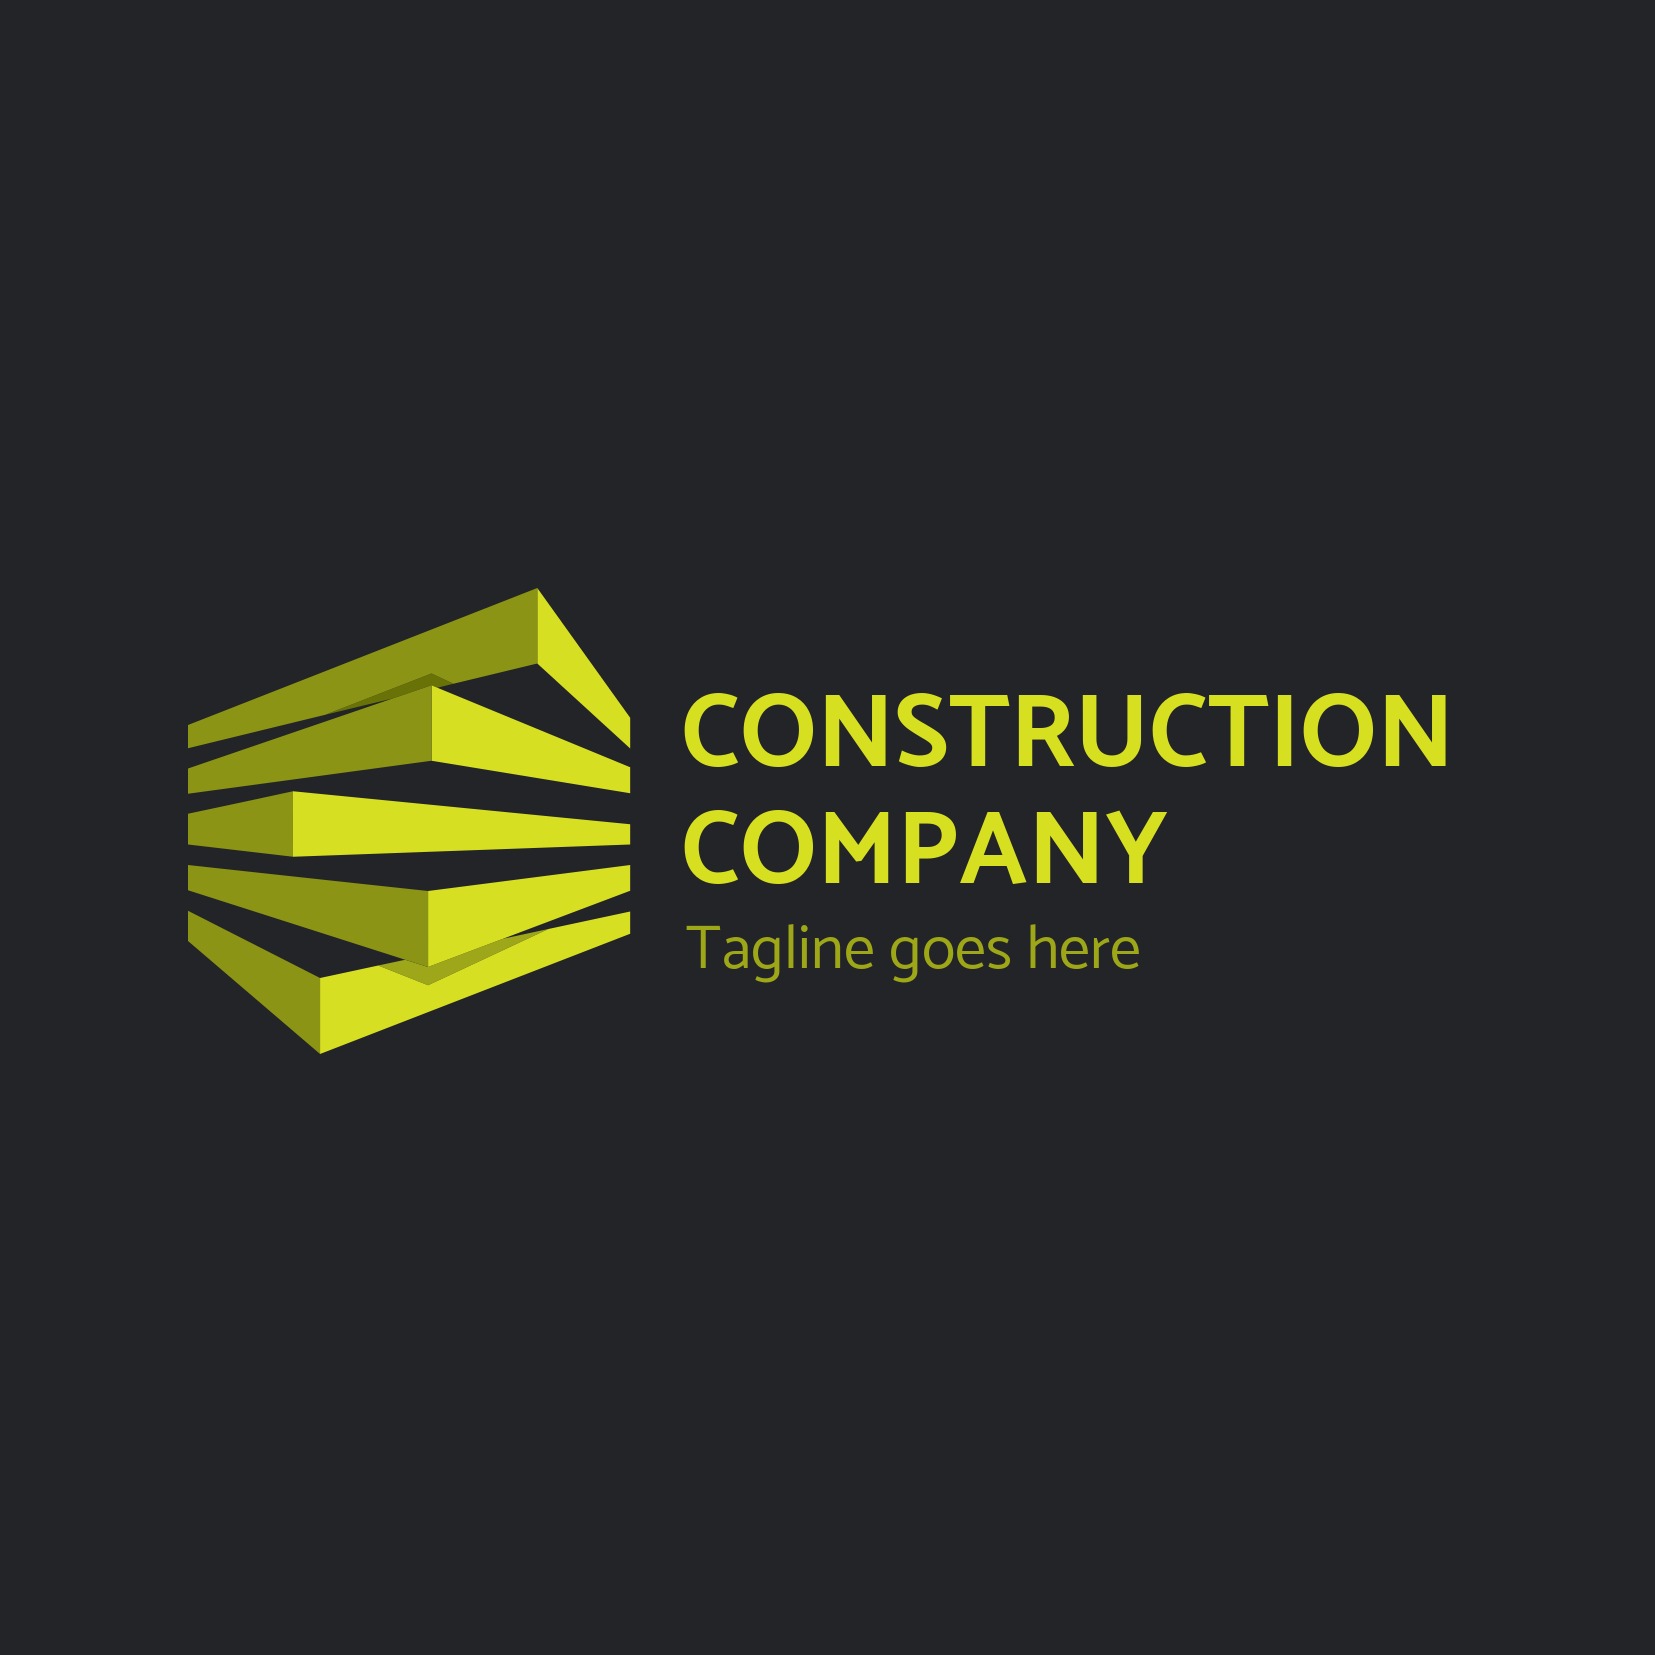 Hình ảnh logo công ty Construction Company